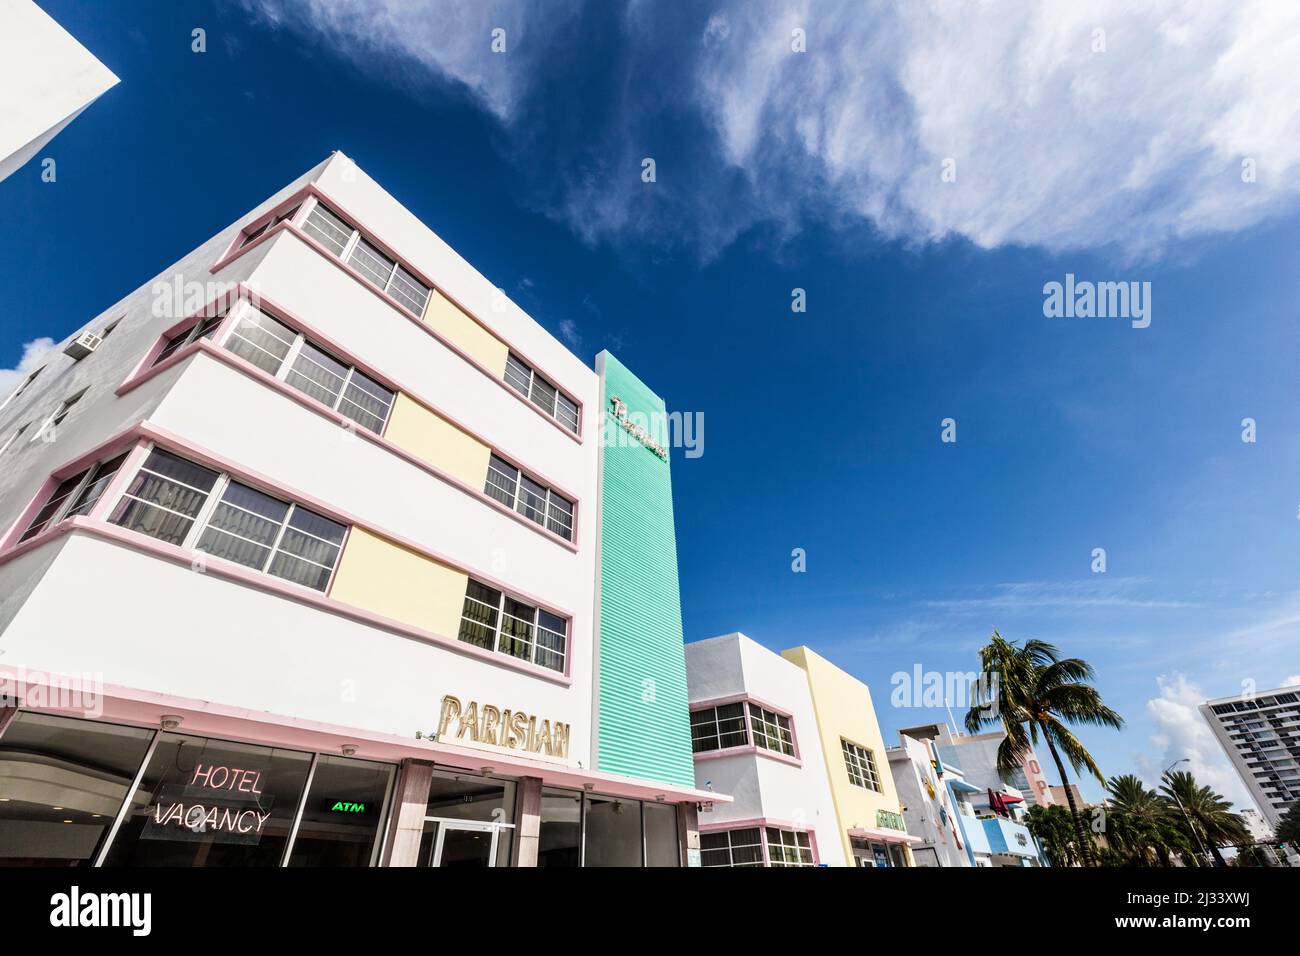 MIAMI, Estados Unidos - 5 DE AGOSTO de 2013: Fachada del hotel Parisian, un antiguo hotel art deco junto a Ocean Drive en el distrito Art Deco de Miami. Foto de stock